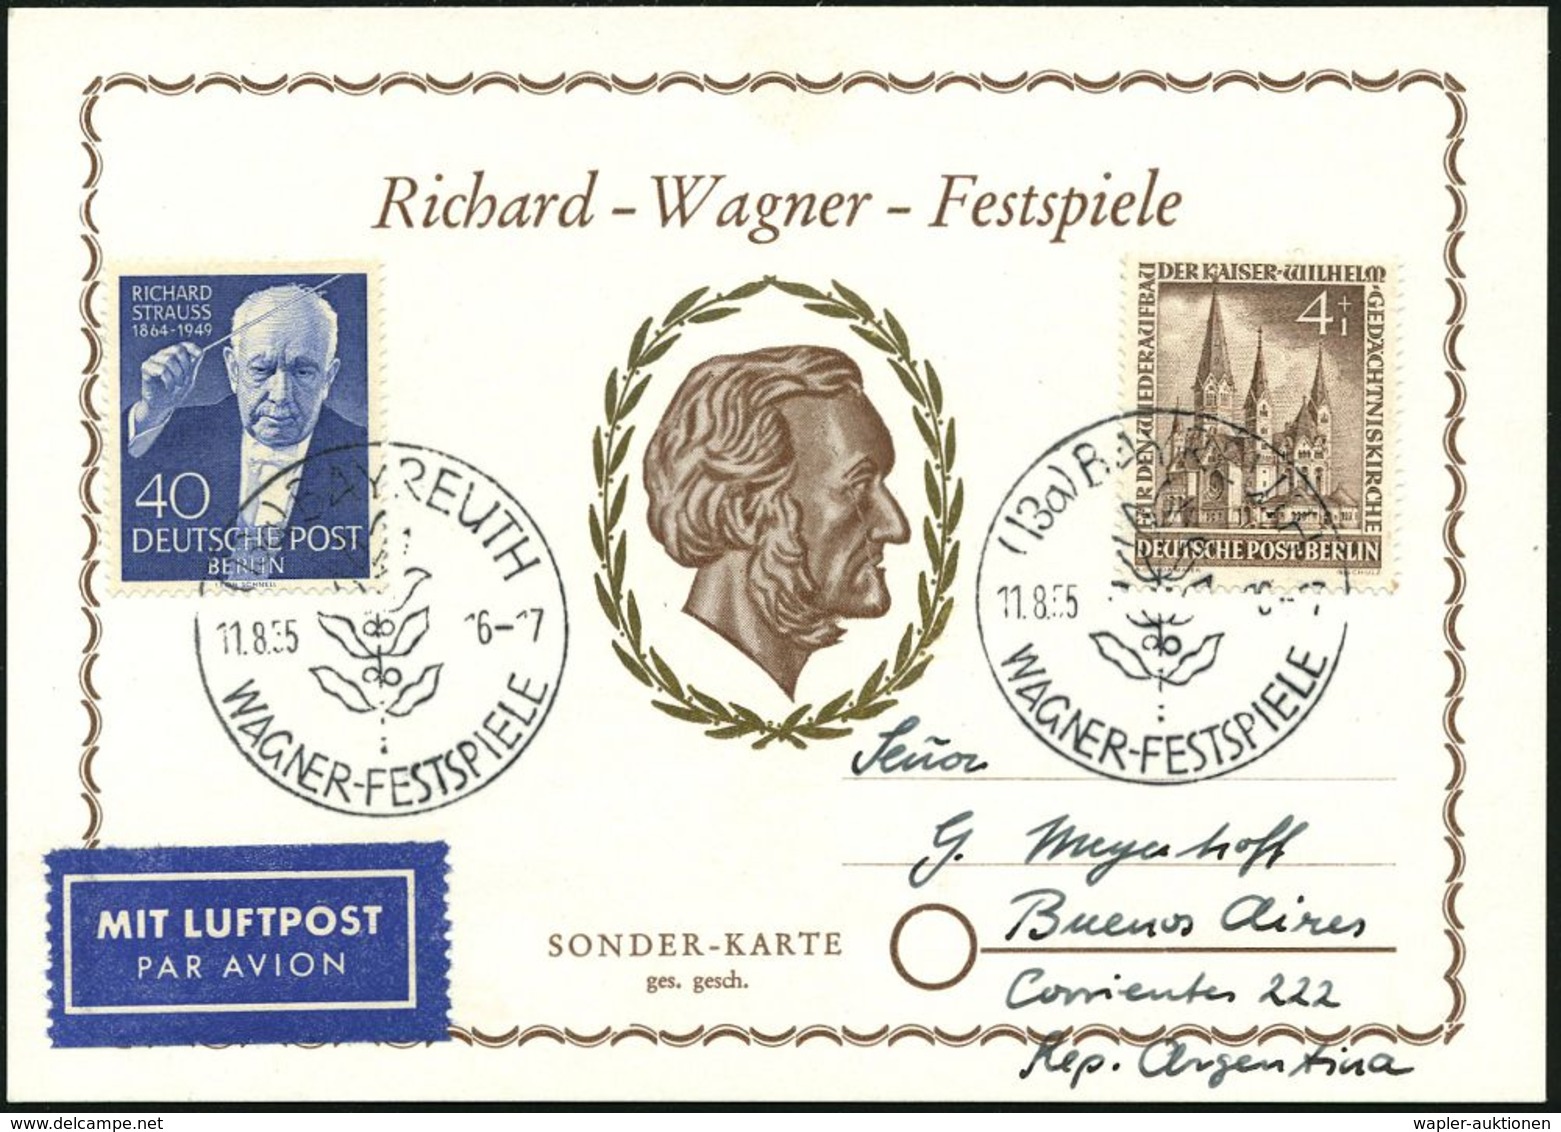 RICHARD WAGNER : (13a) BAYREUTH/  WAGNER-FESTSPIELE 1955 (11.8.) SSt (Lorbeer) 2x Auf 40 Pf. R.Strauss (Berlin Mi. 106,  - Musique